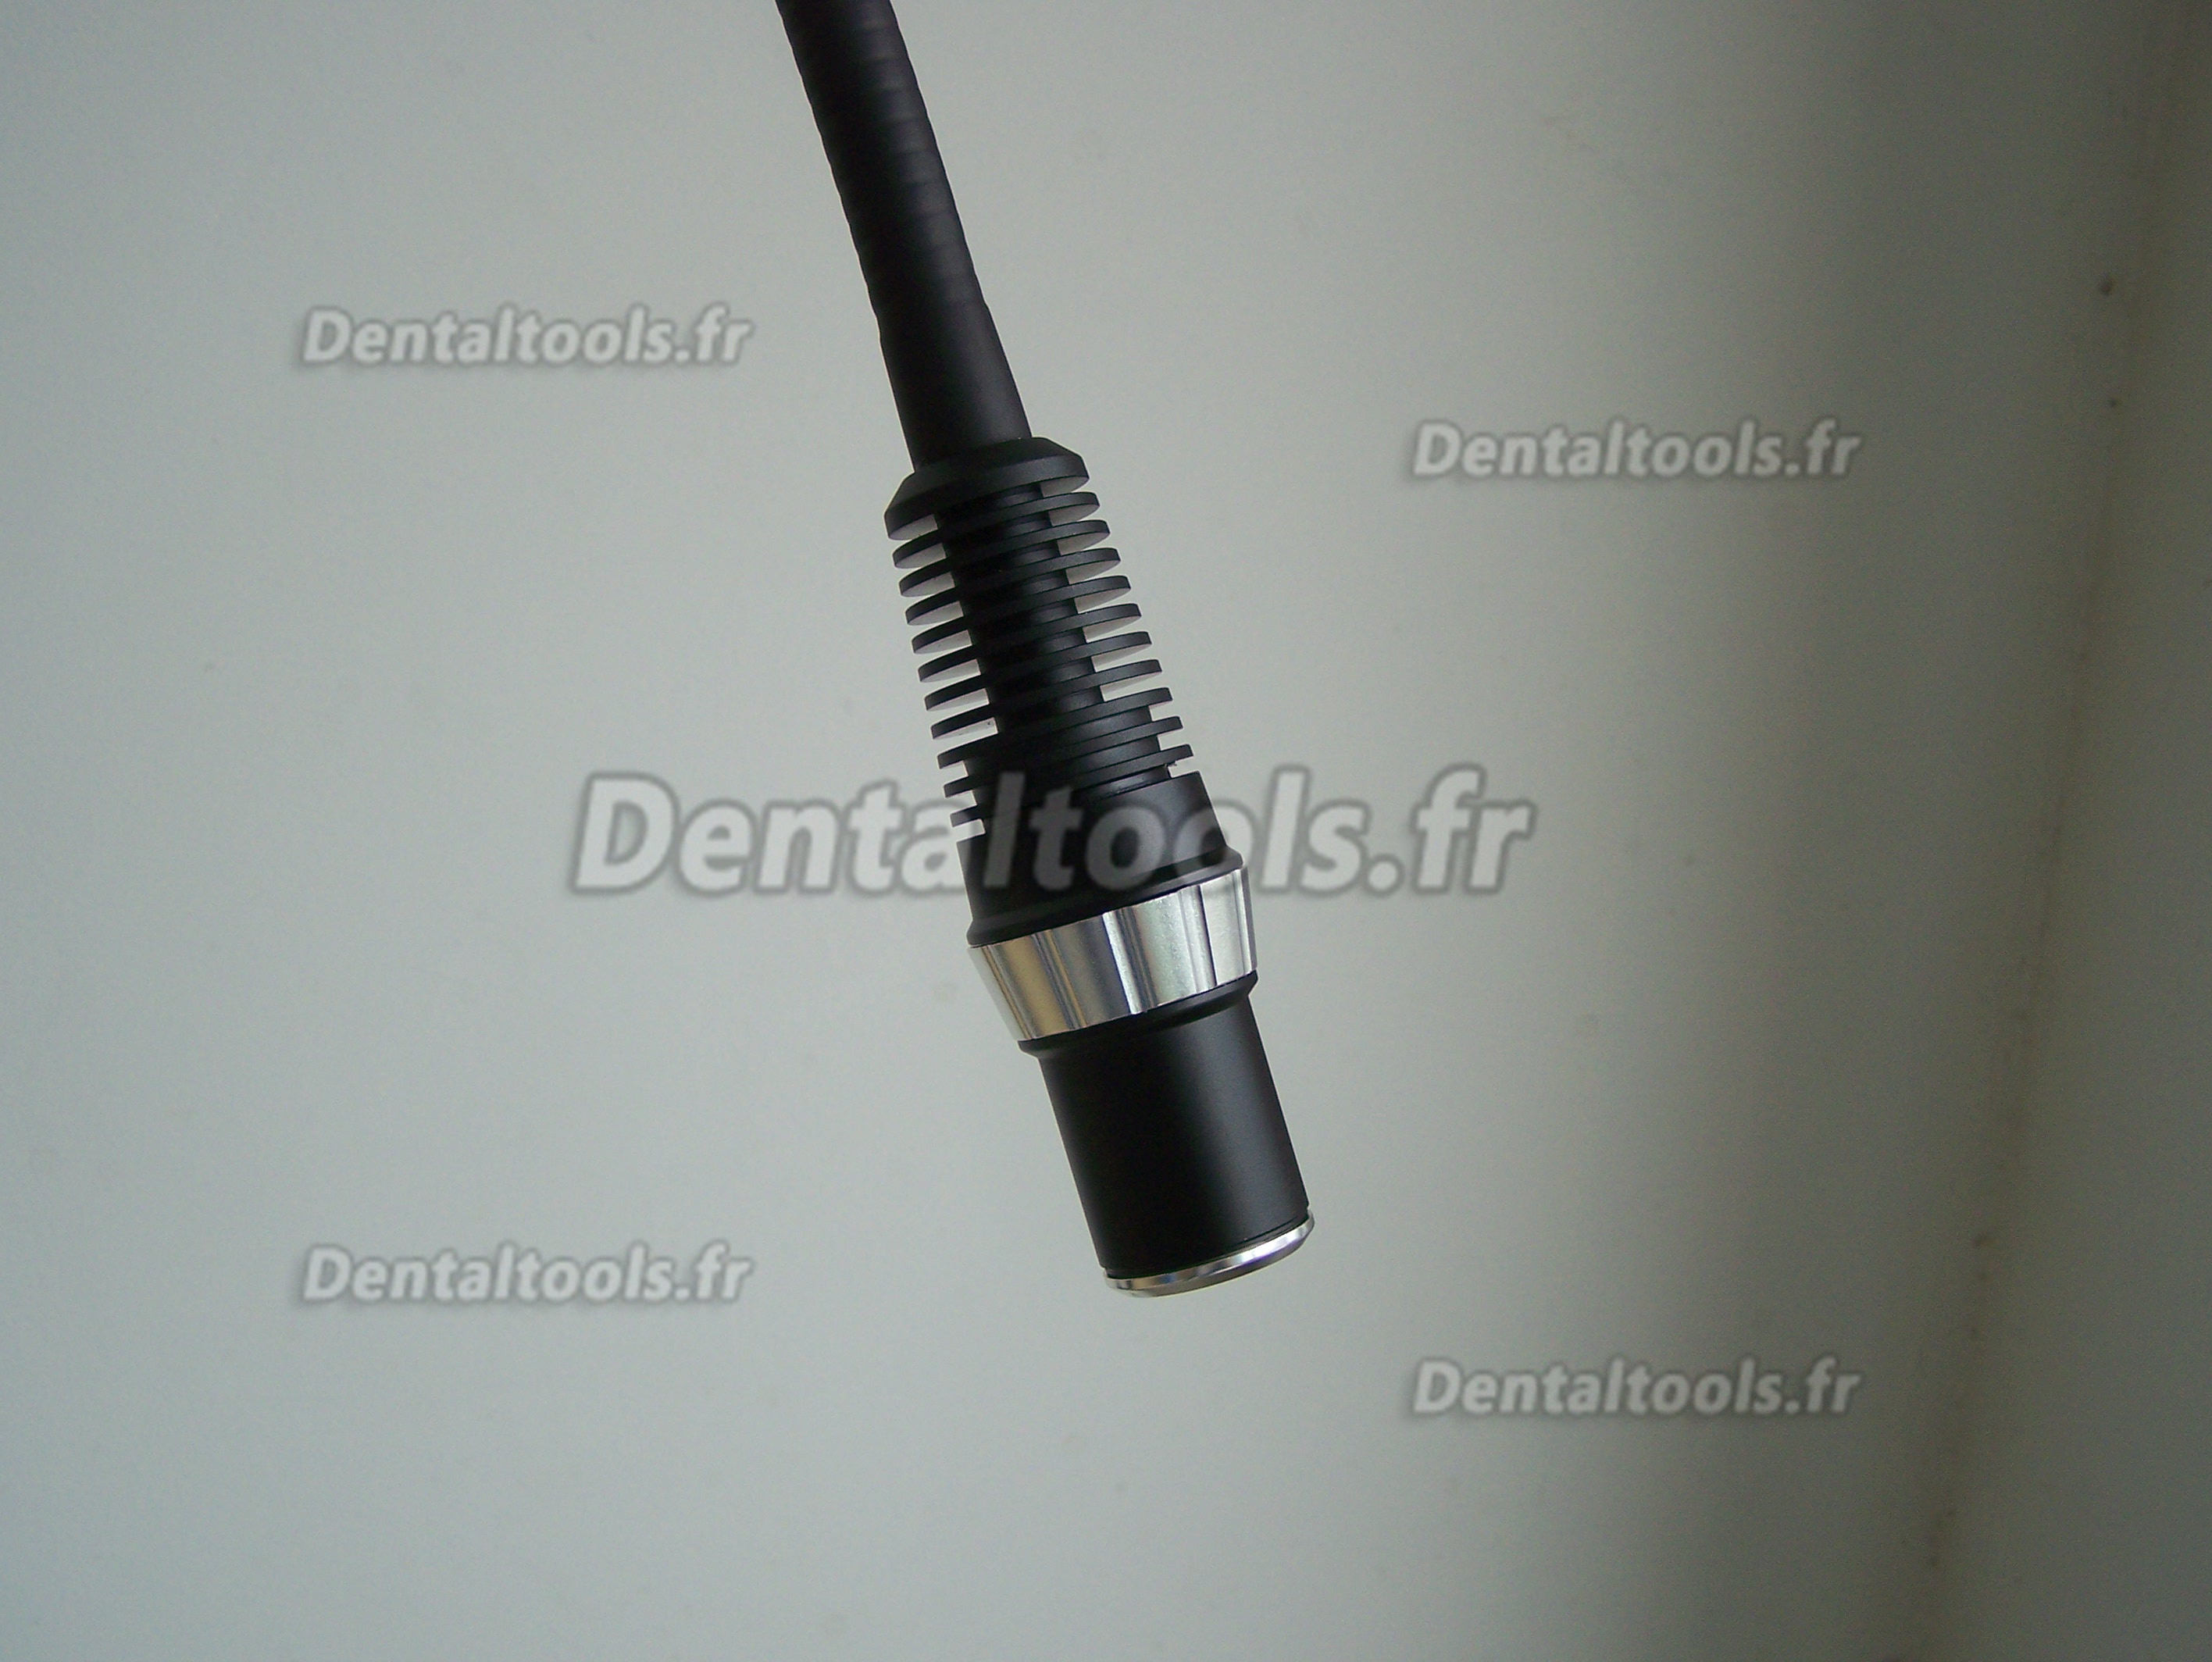 KWS® LED Lampe de diagnostic dentaire KD-202C(B)5W